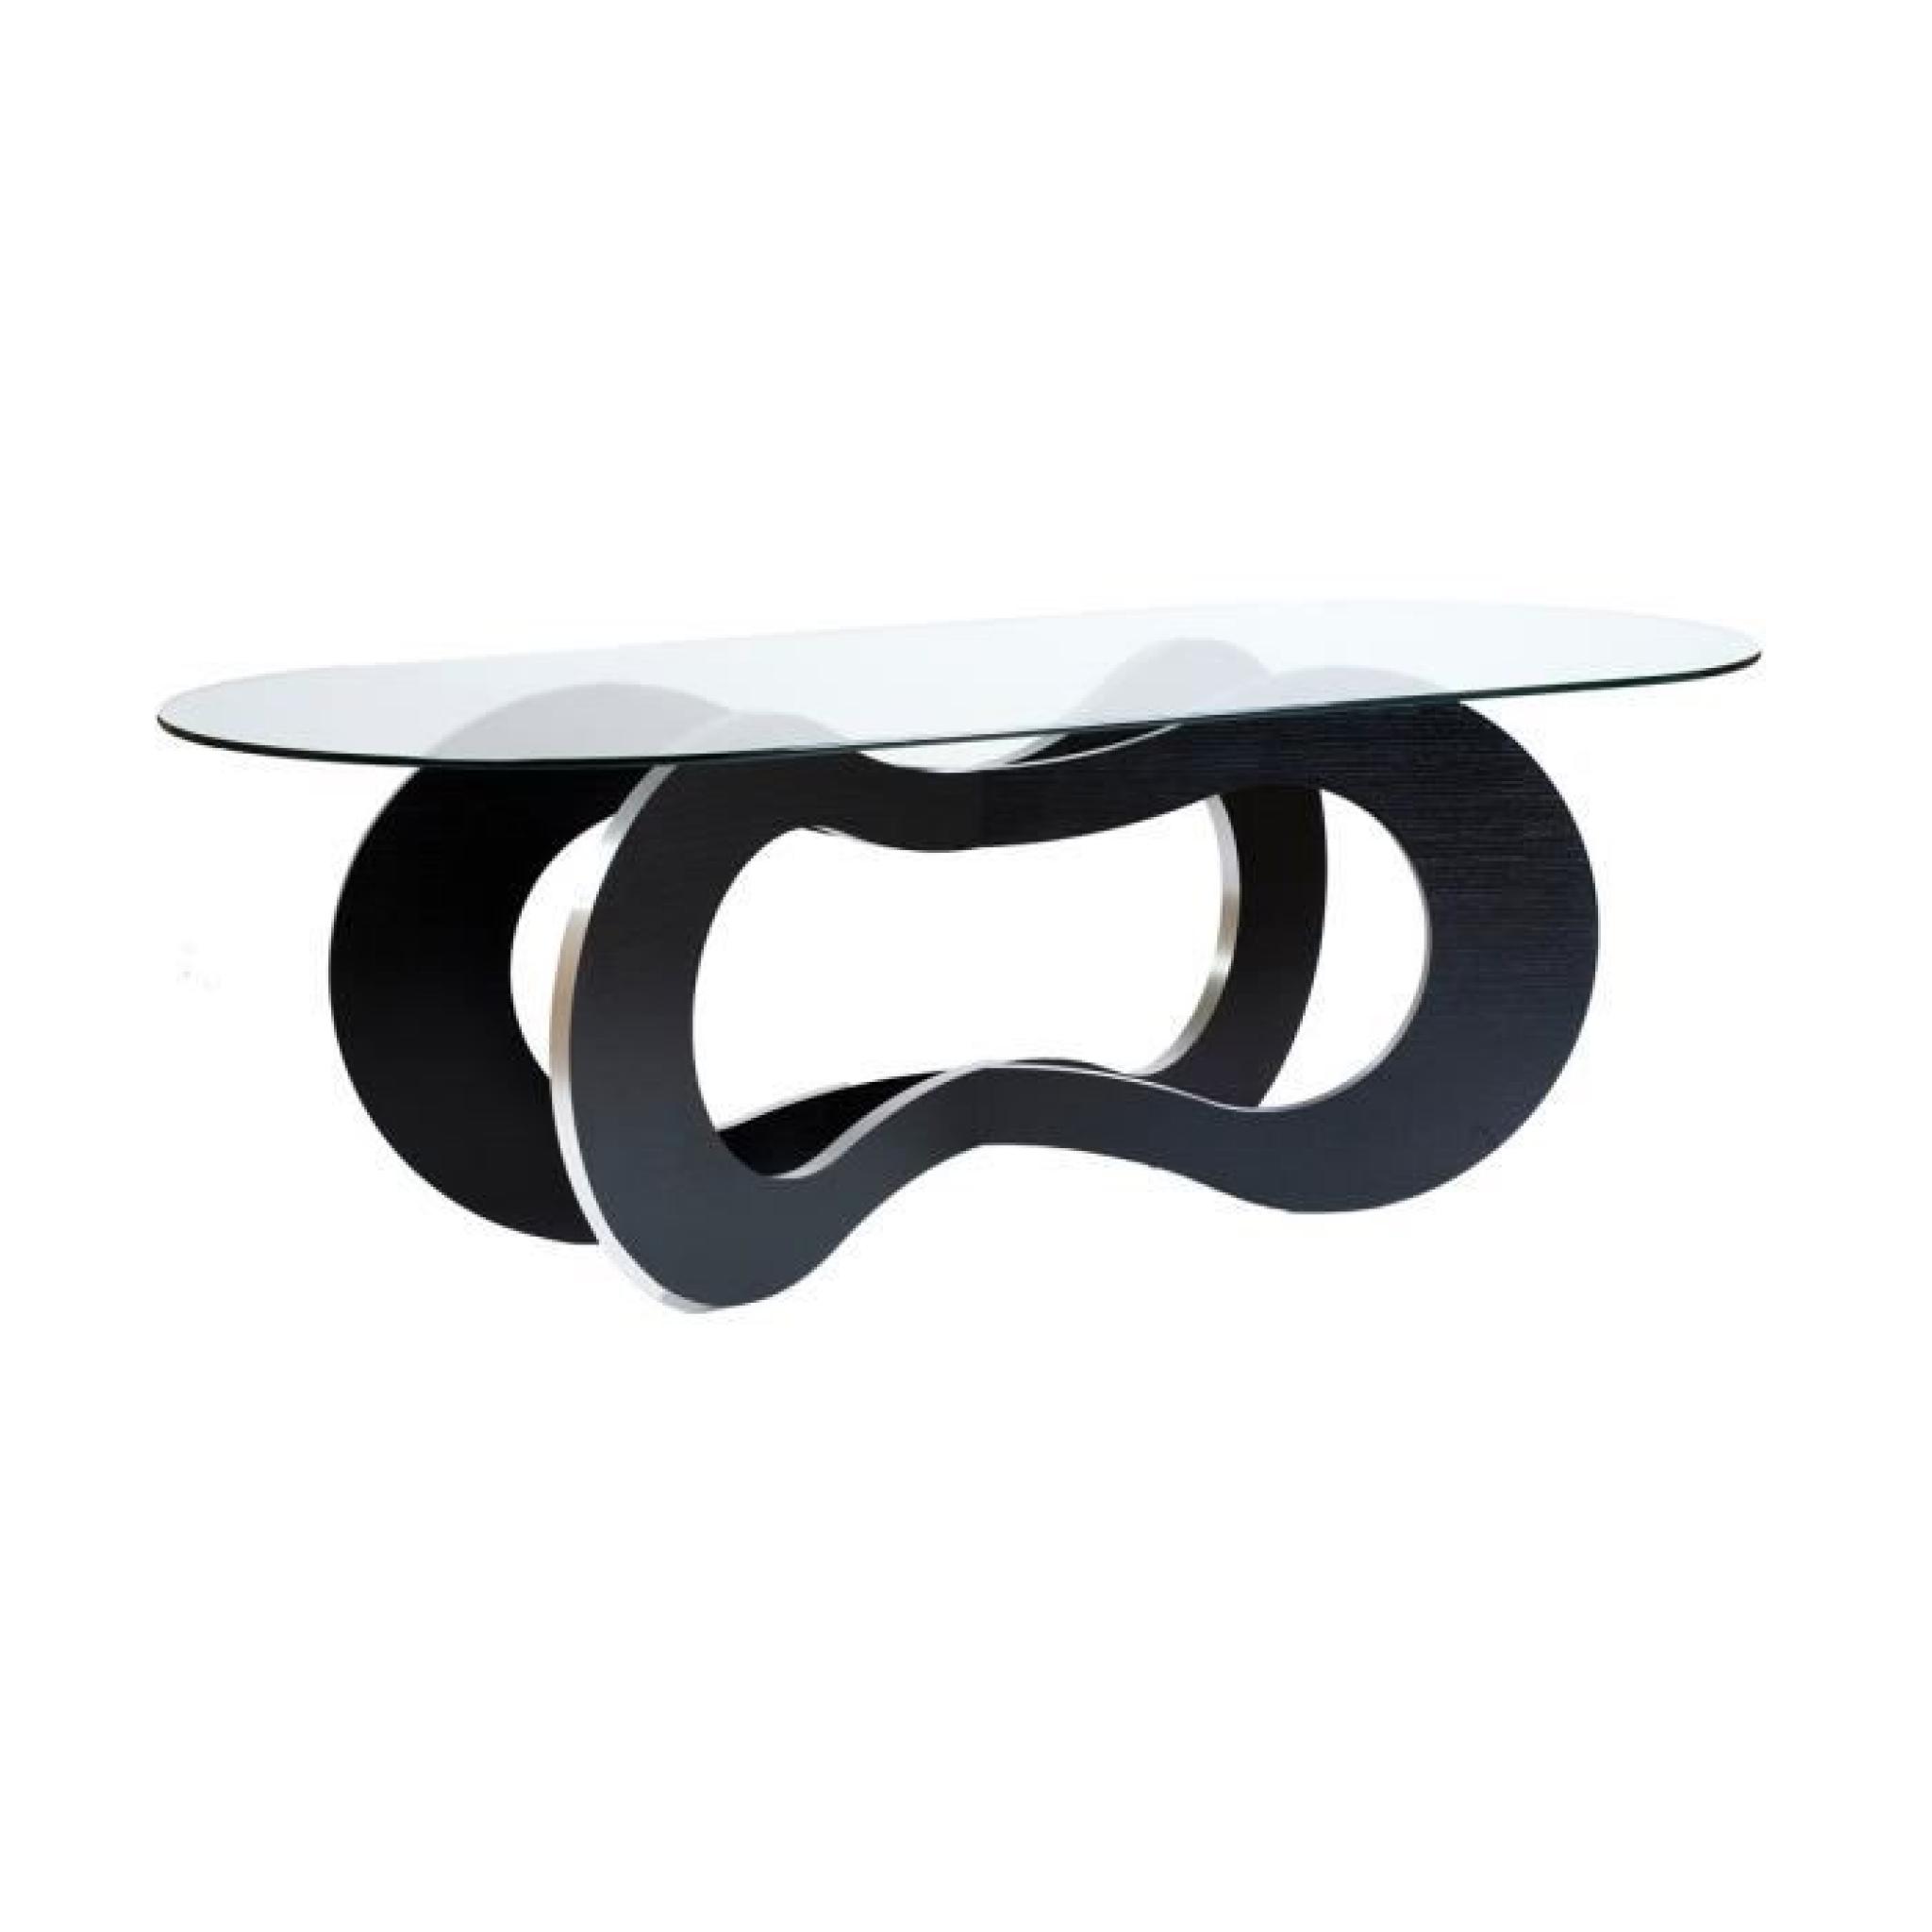 Table de repas en bois noir Spirale